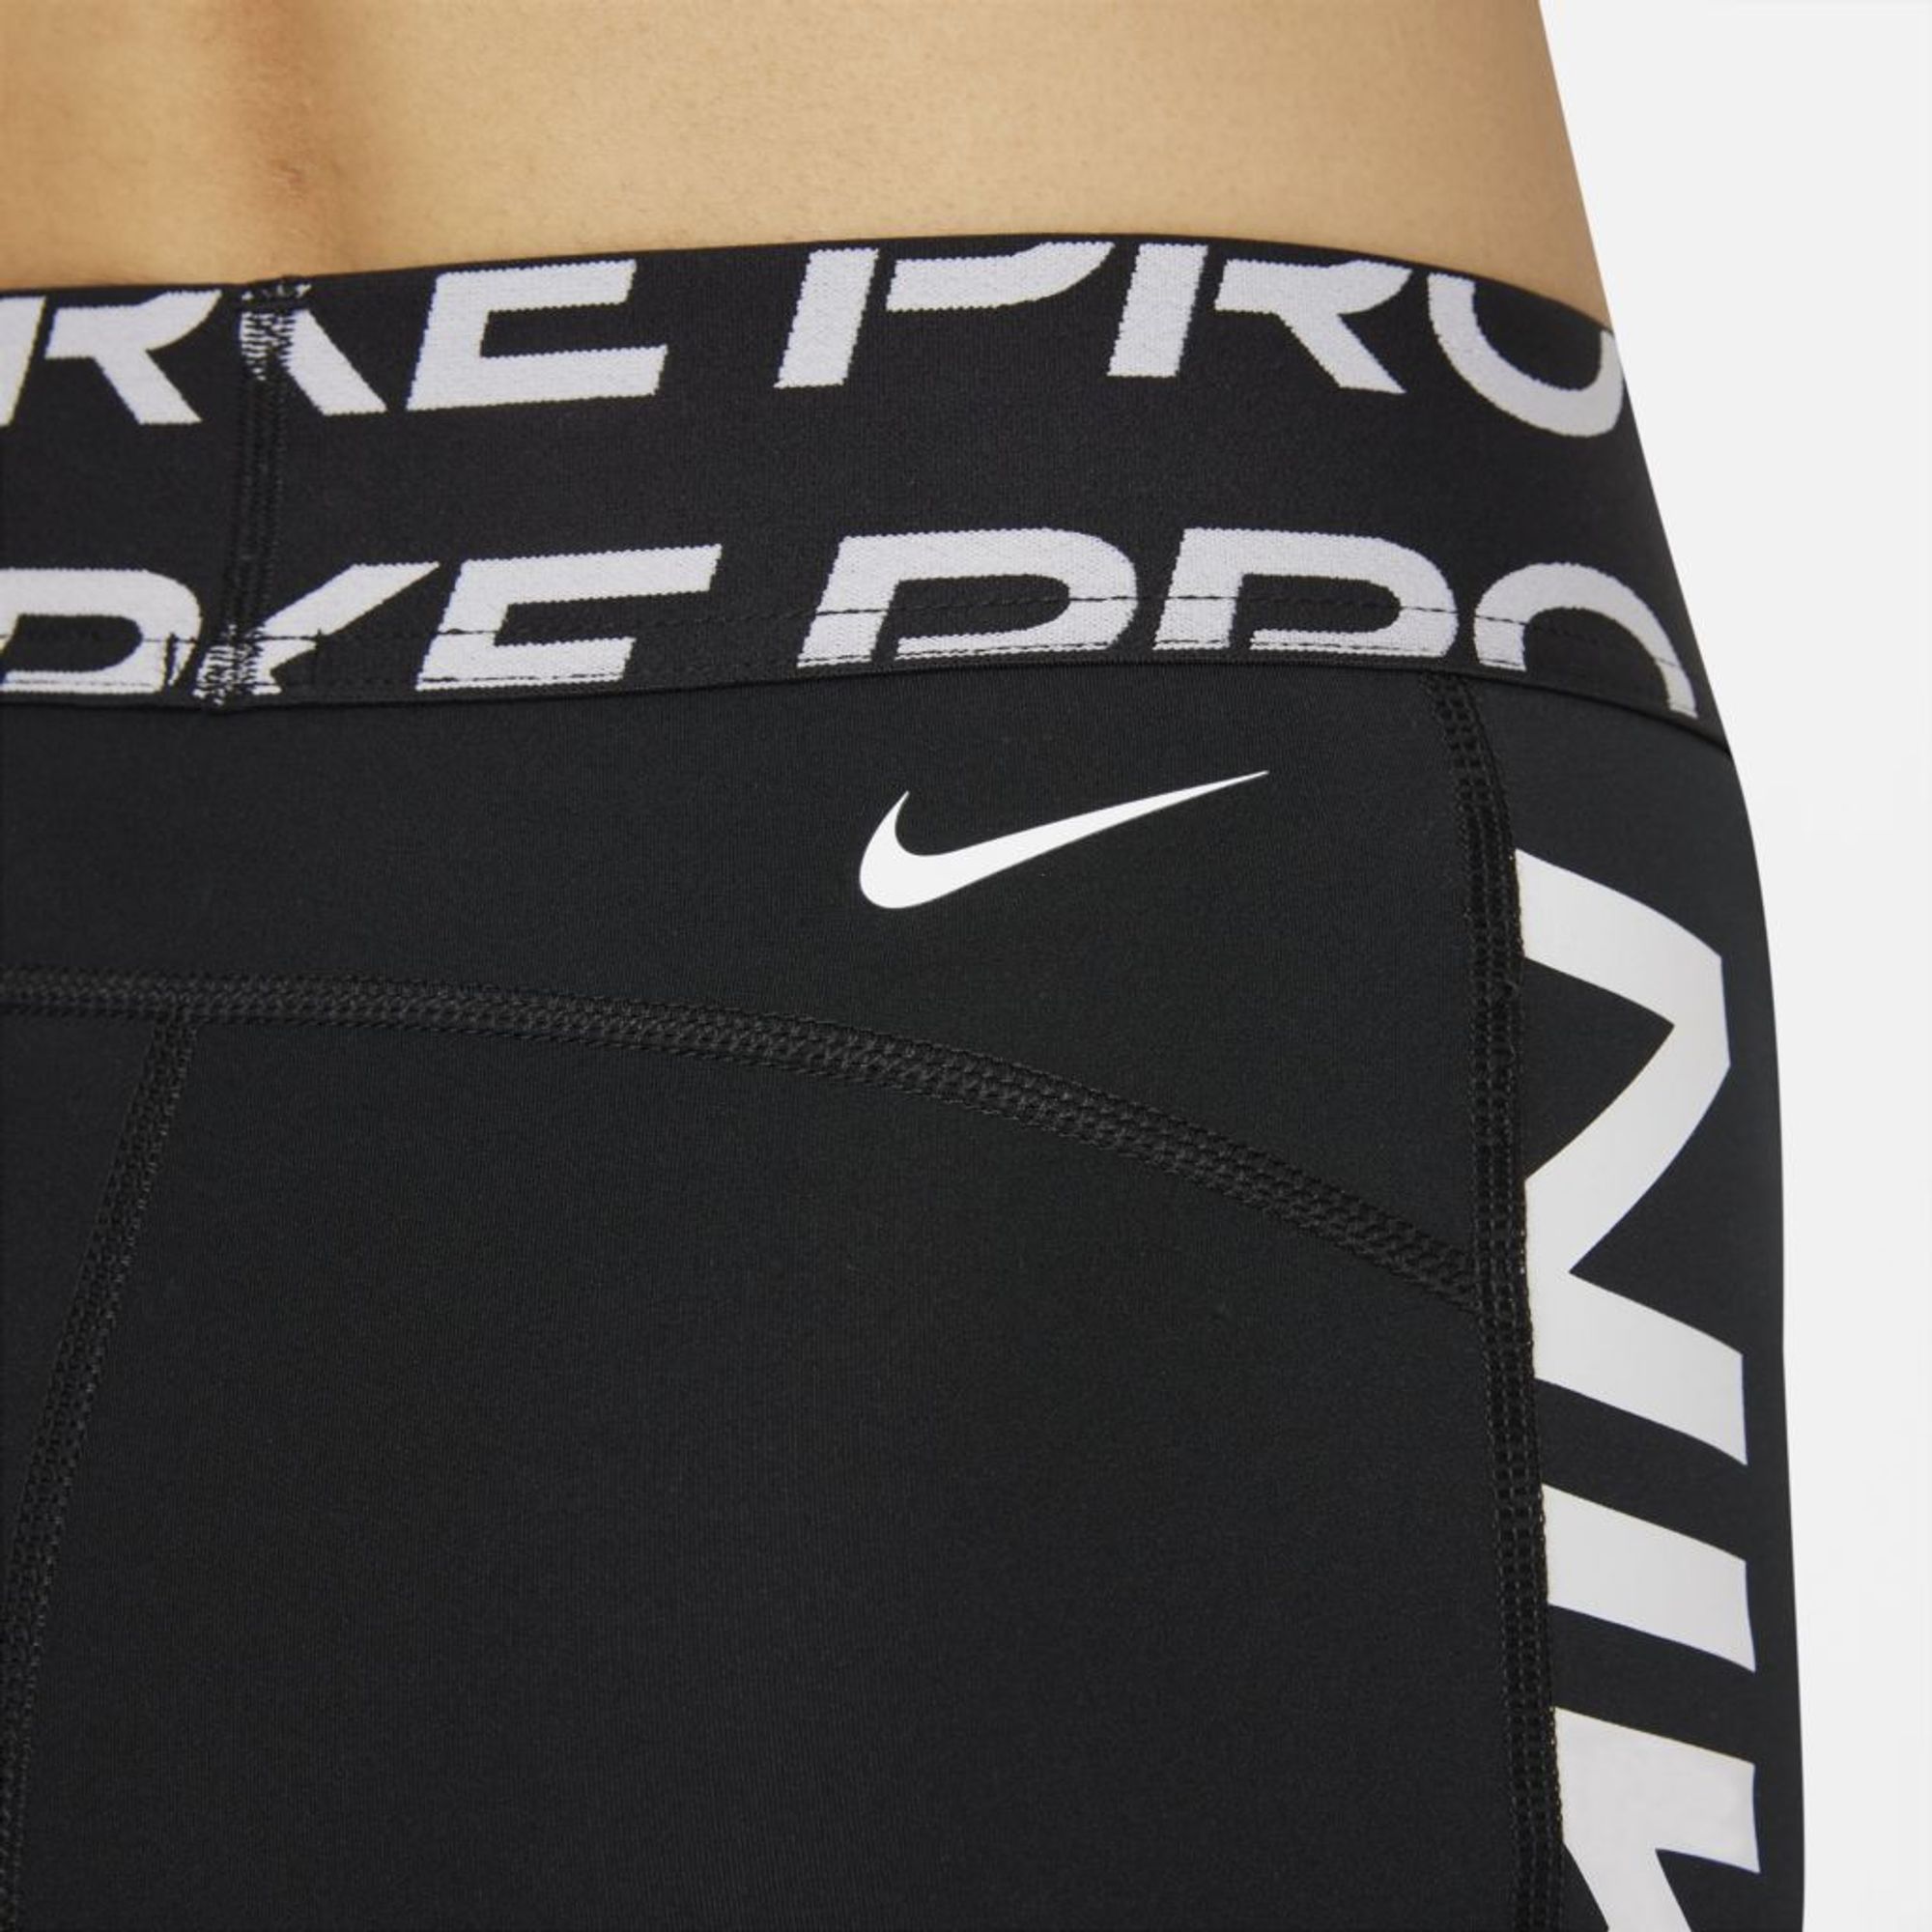 Shorts Nike Pro Dri-FIT Feminino - nortista